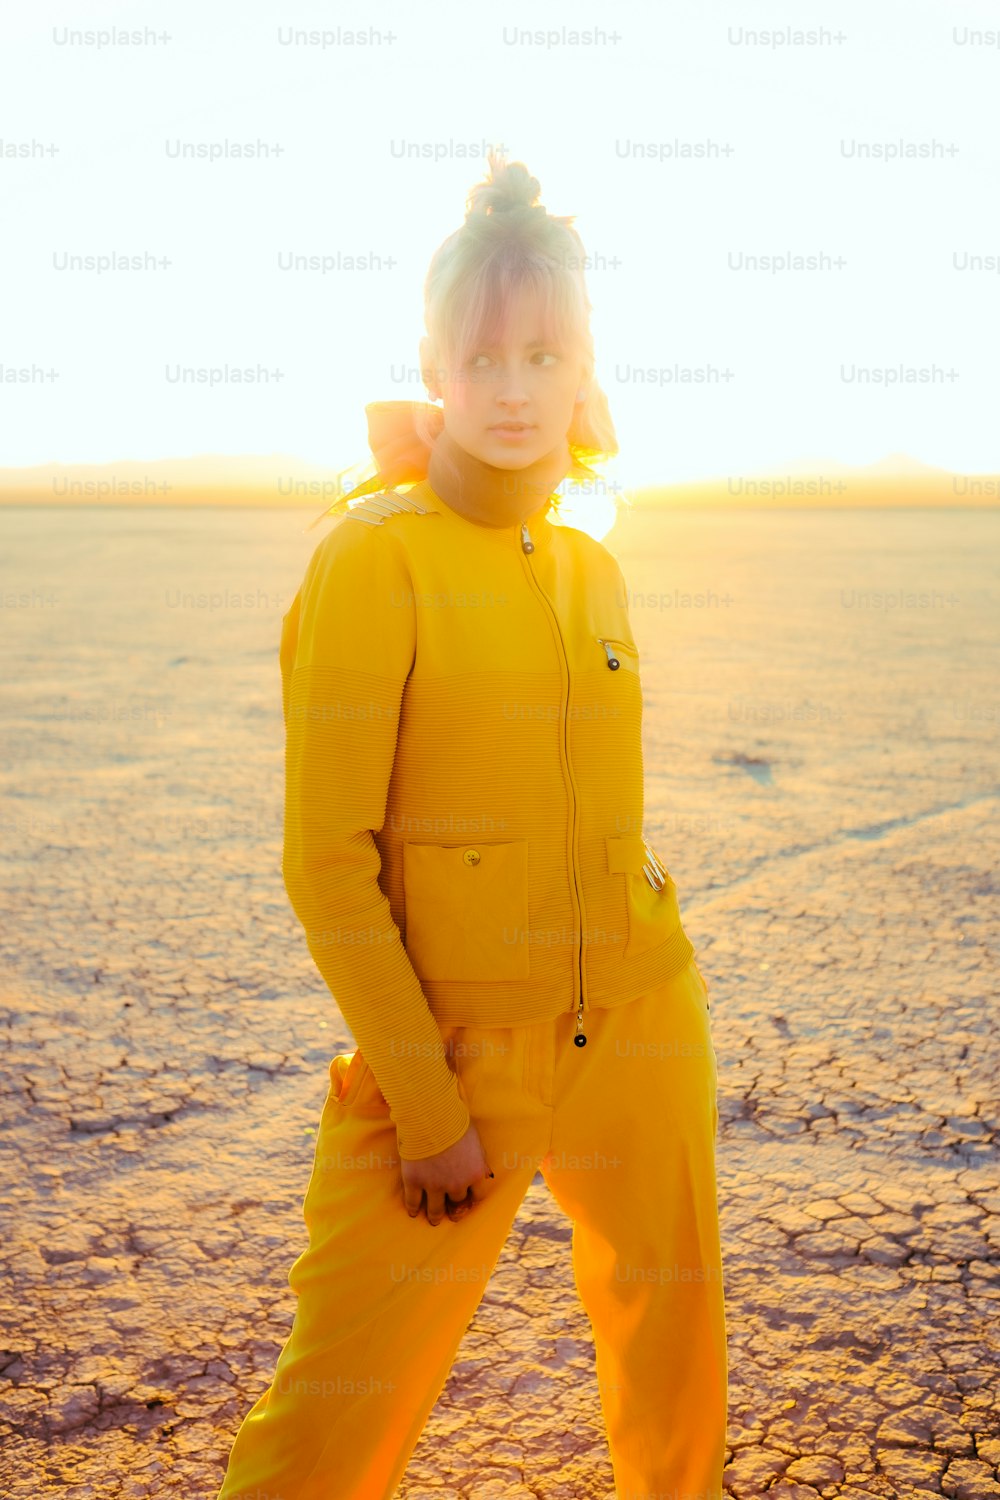 砂漠に立っている黄色いスーツを着た人